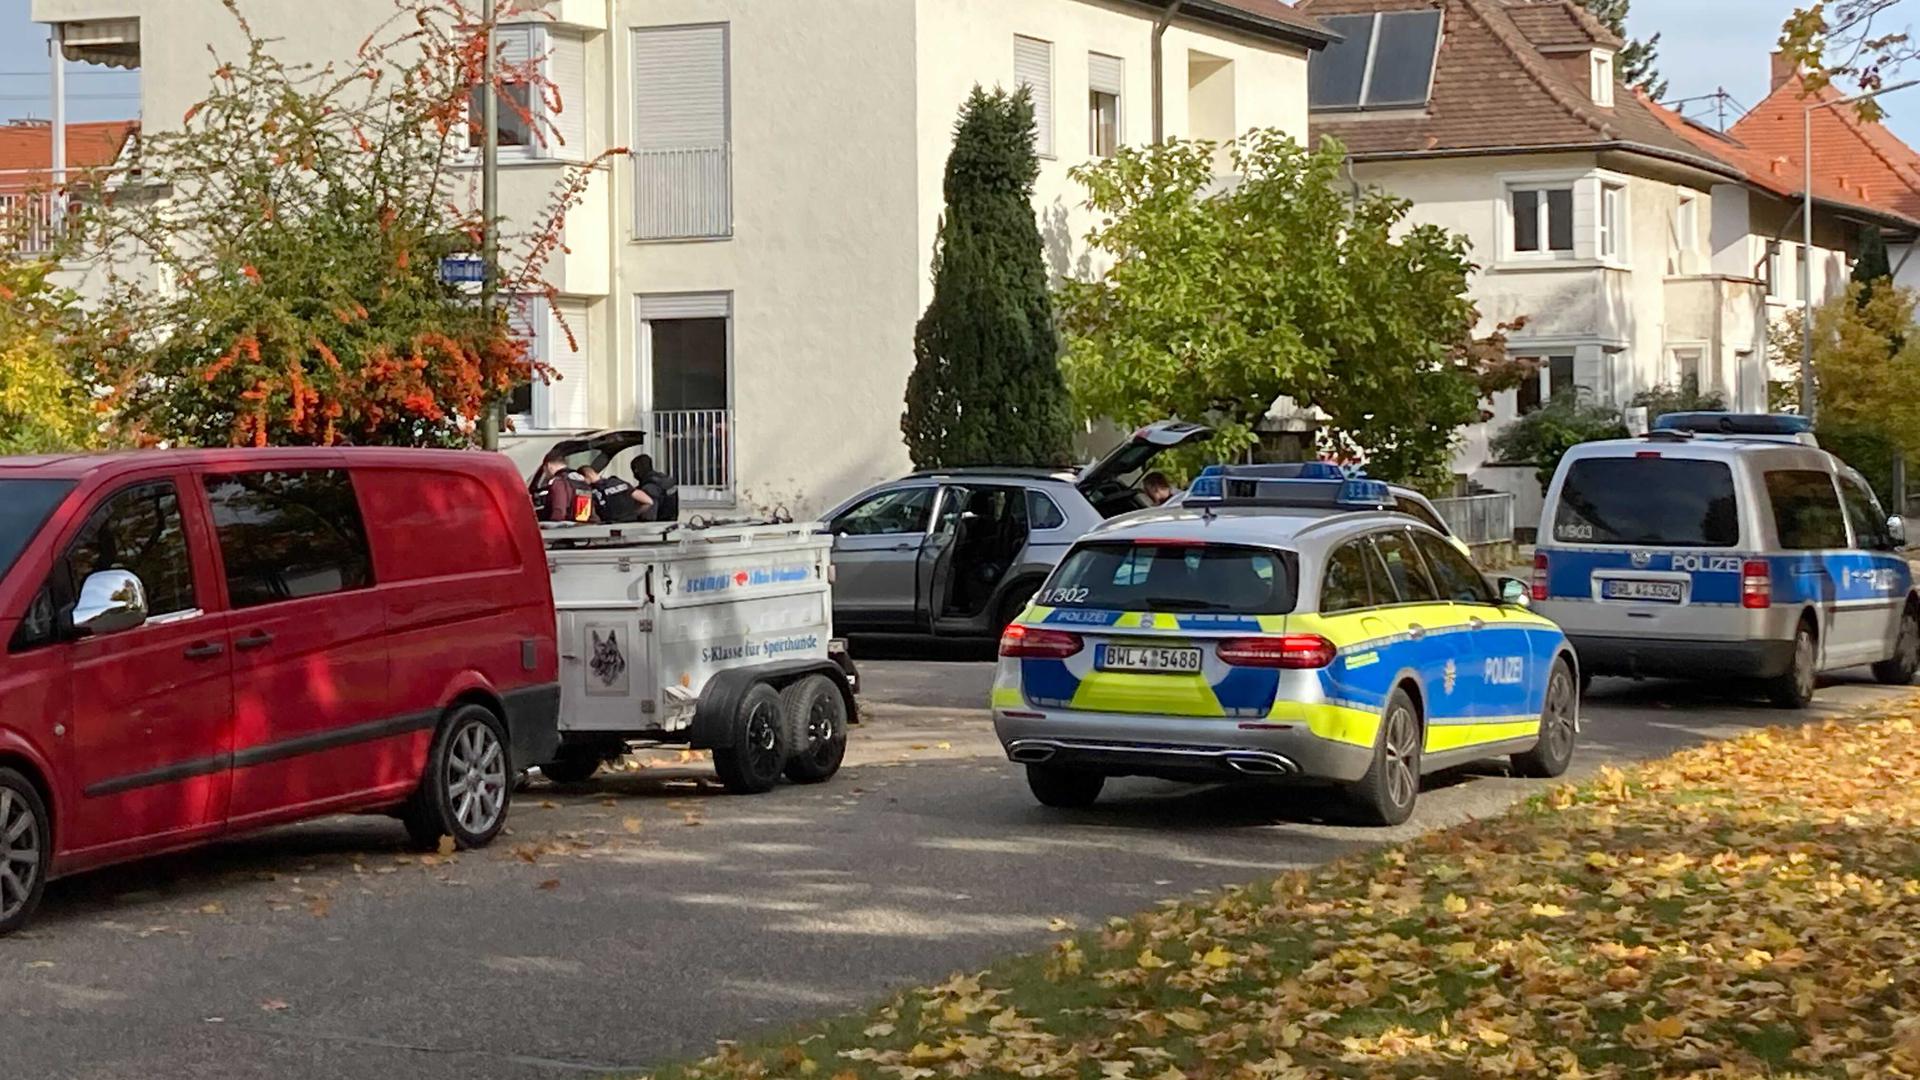 Polizeiautos stehen in einer Straße in Karlsruhe-Neureut.